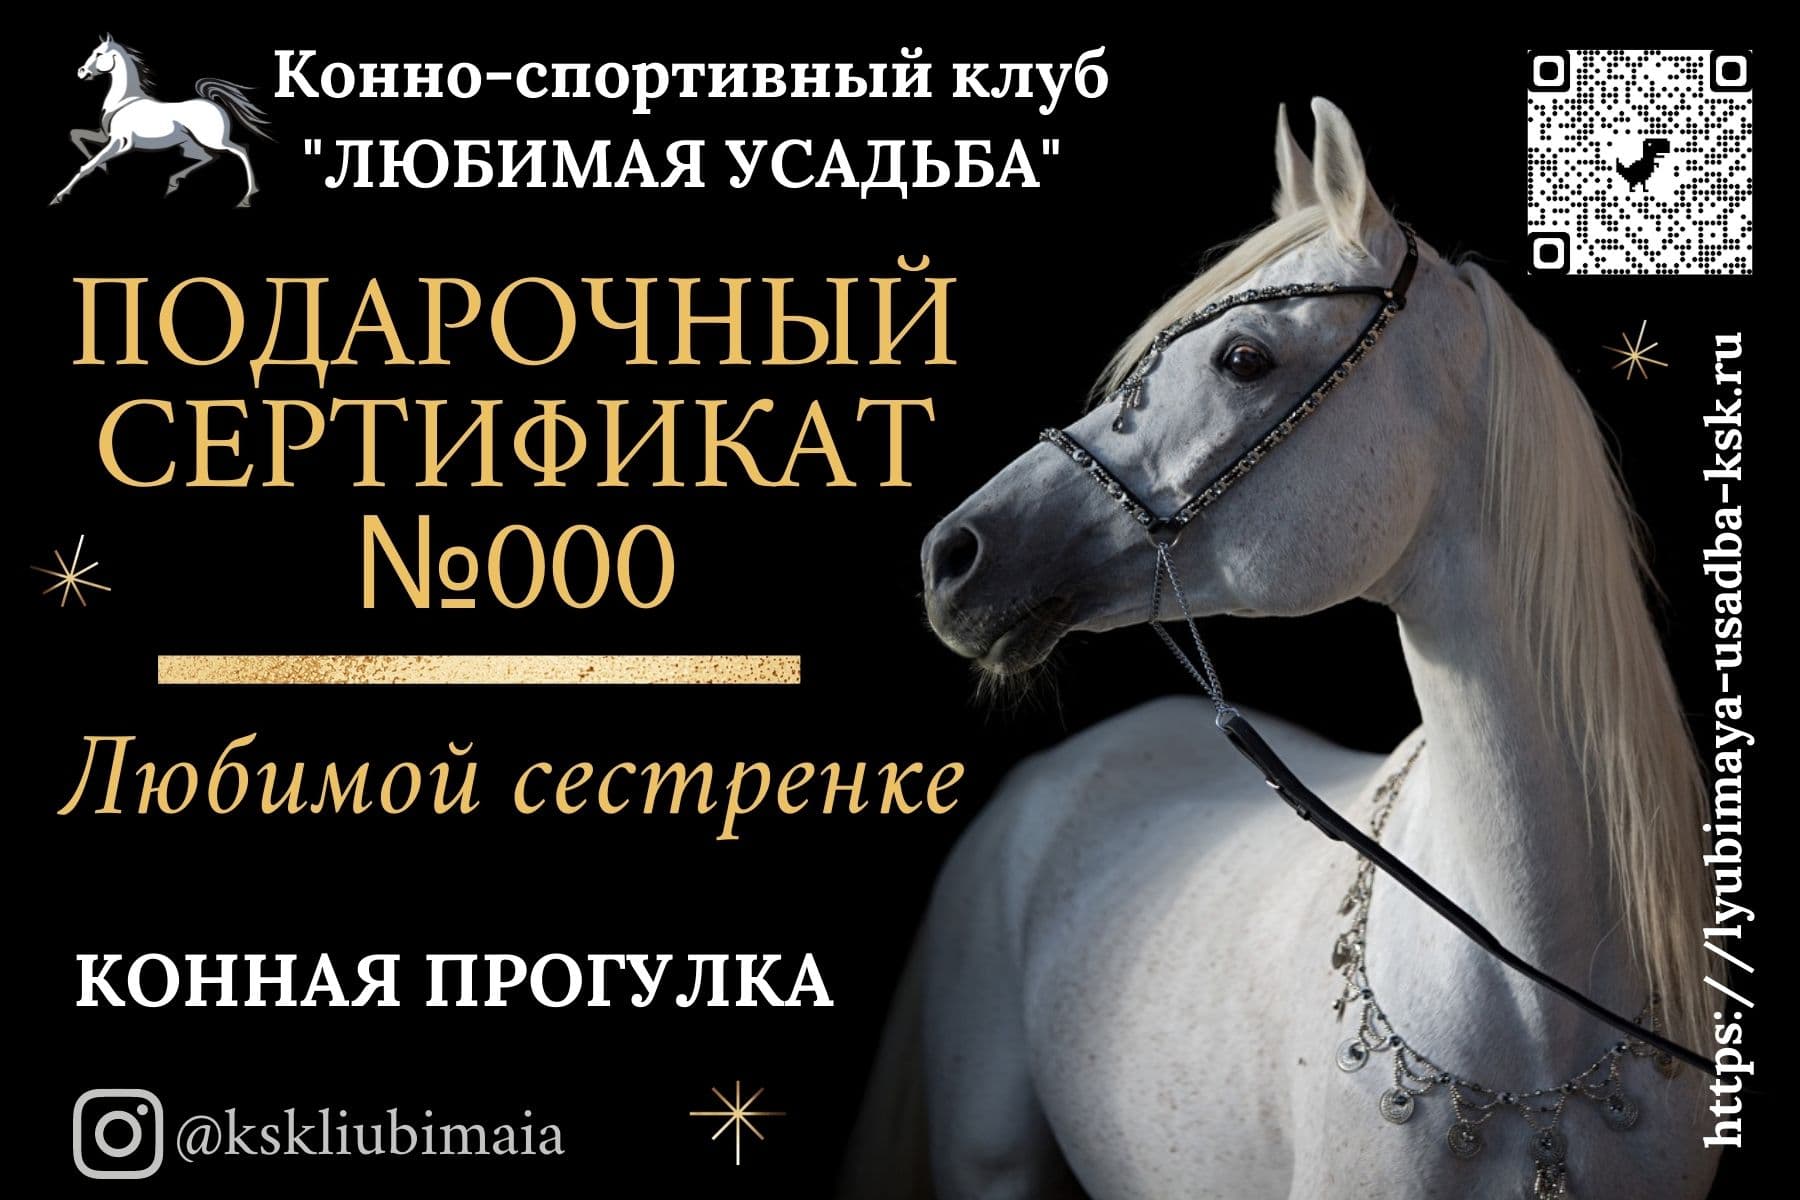 Подарочный сертификат на конную прогулку КСК 